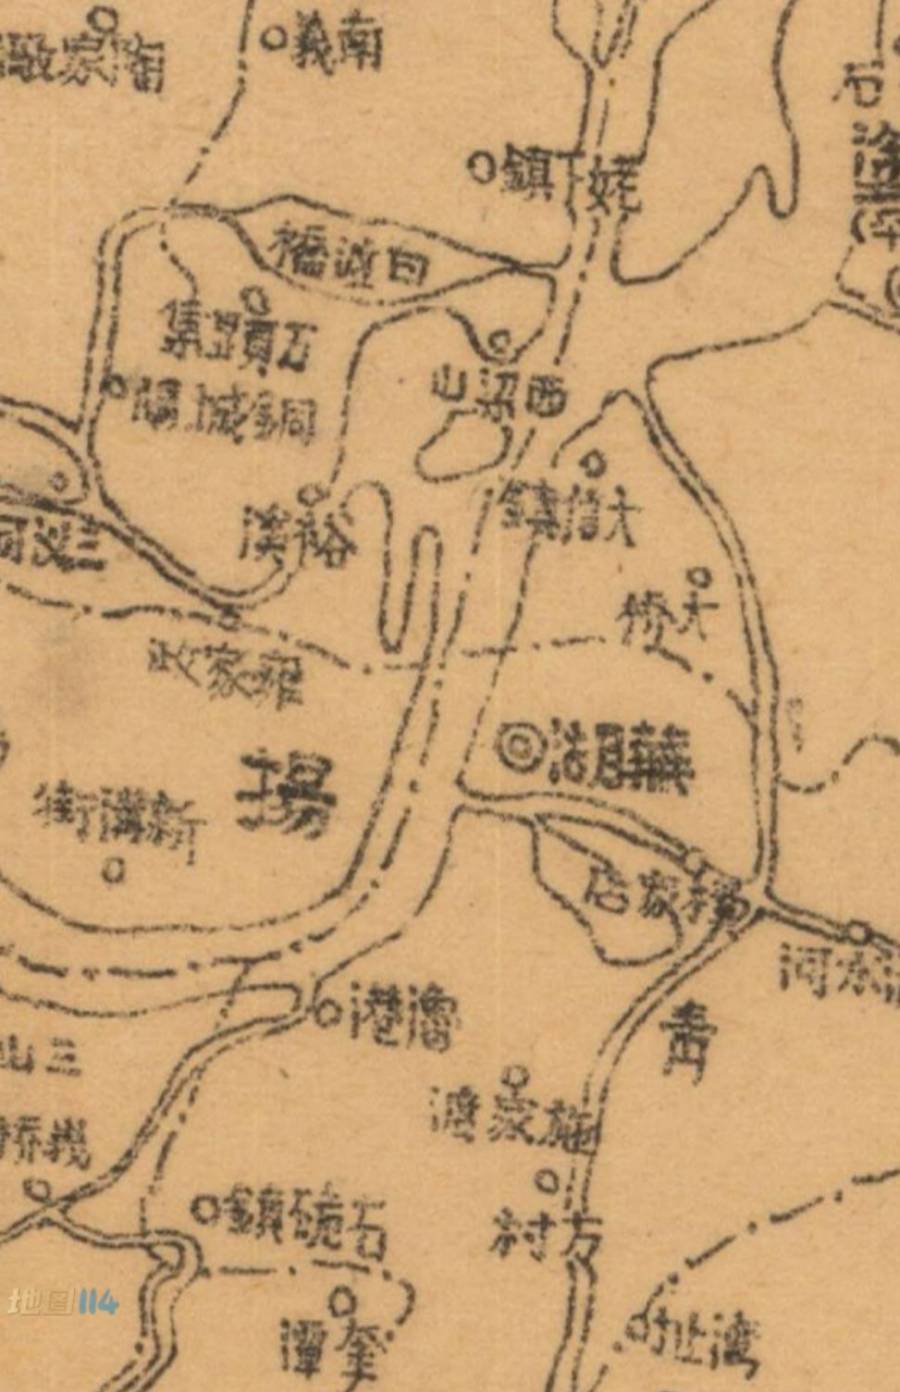 芜湖周边水道图.jpg